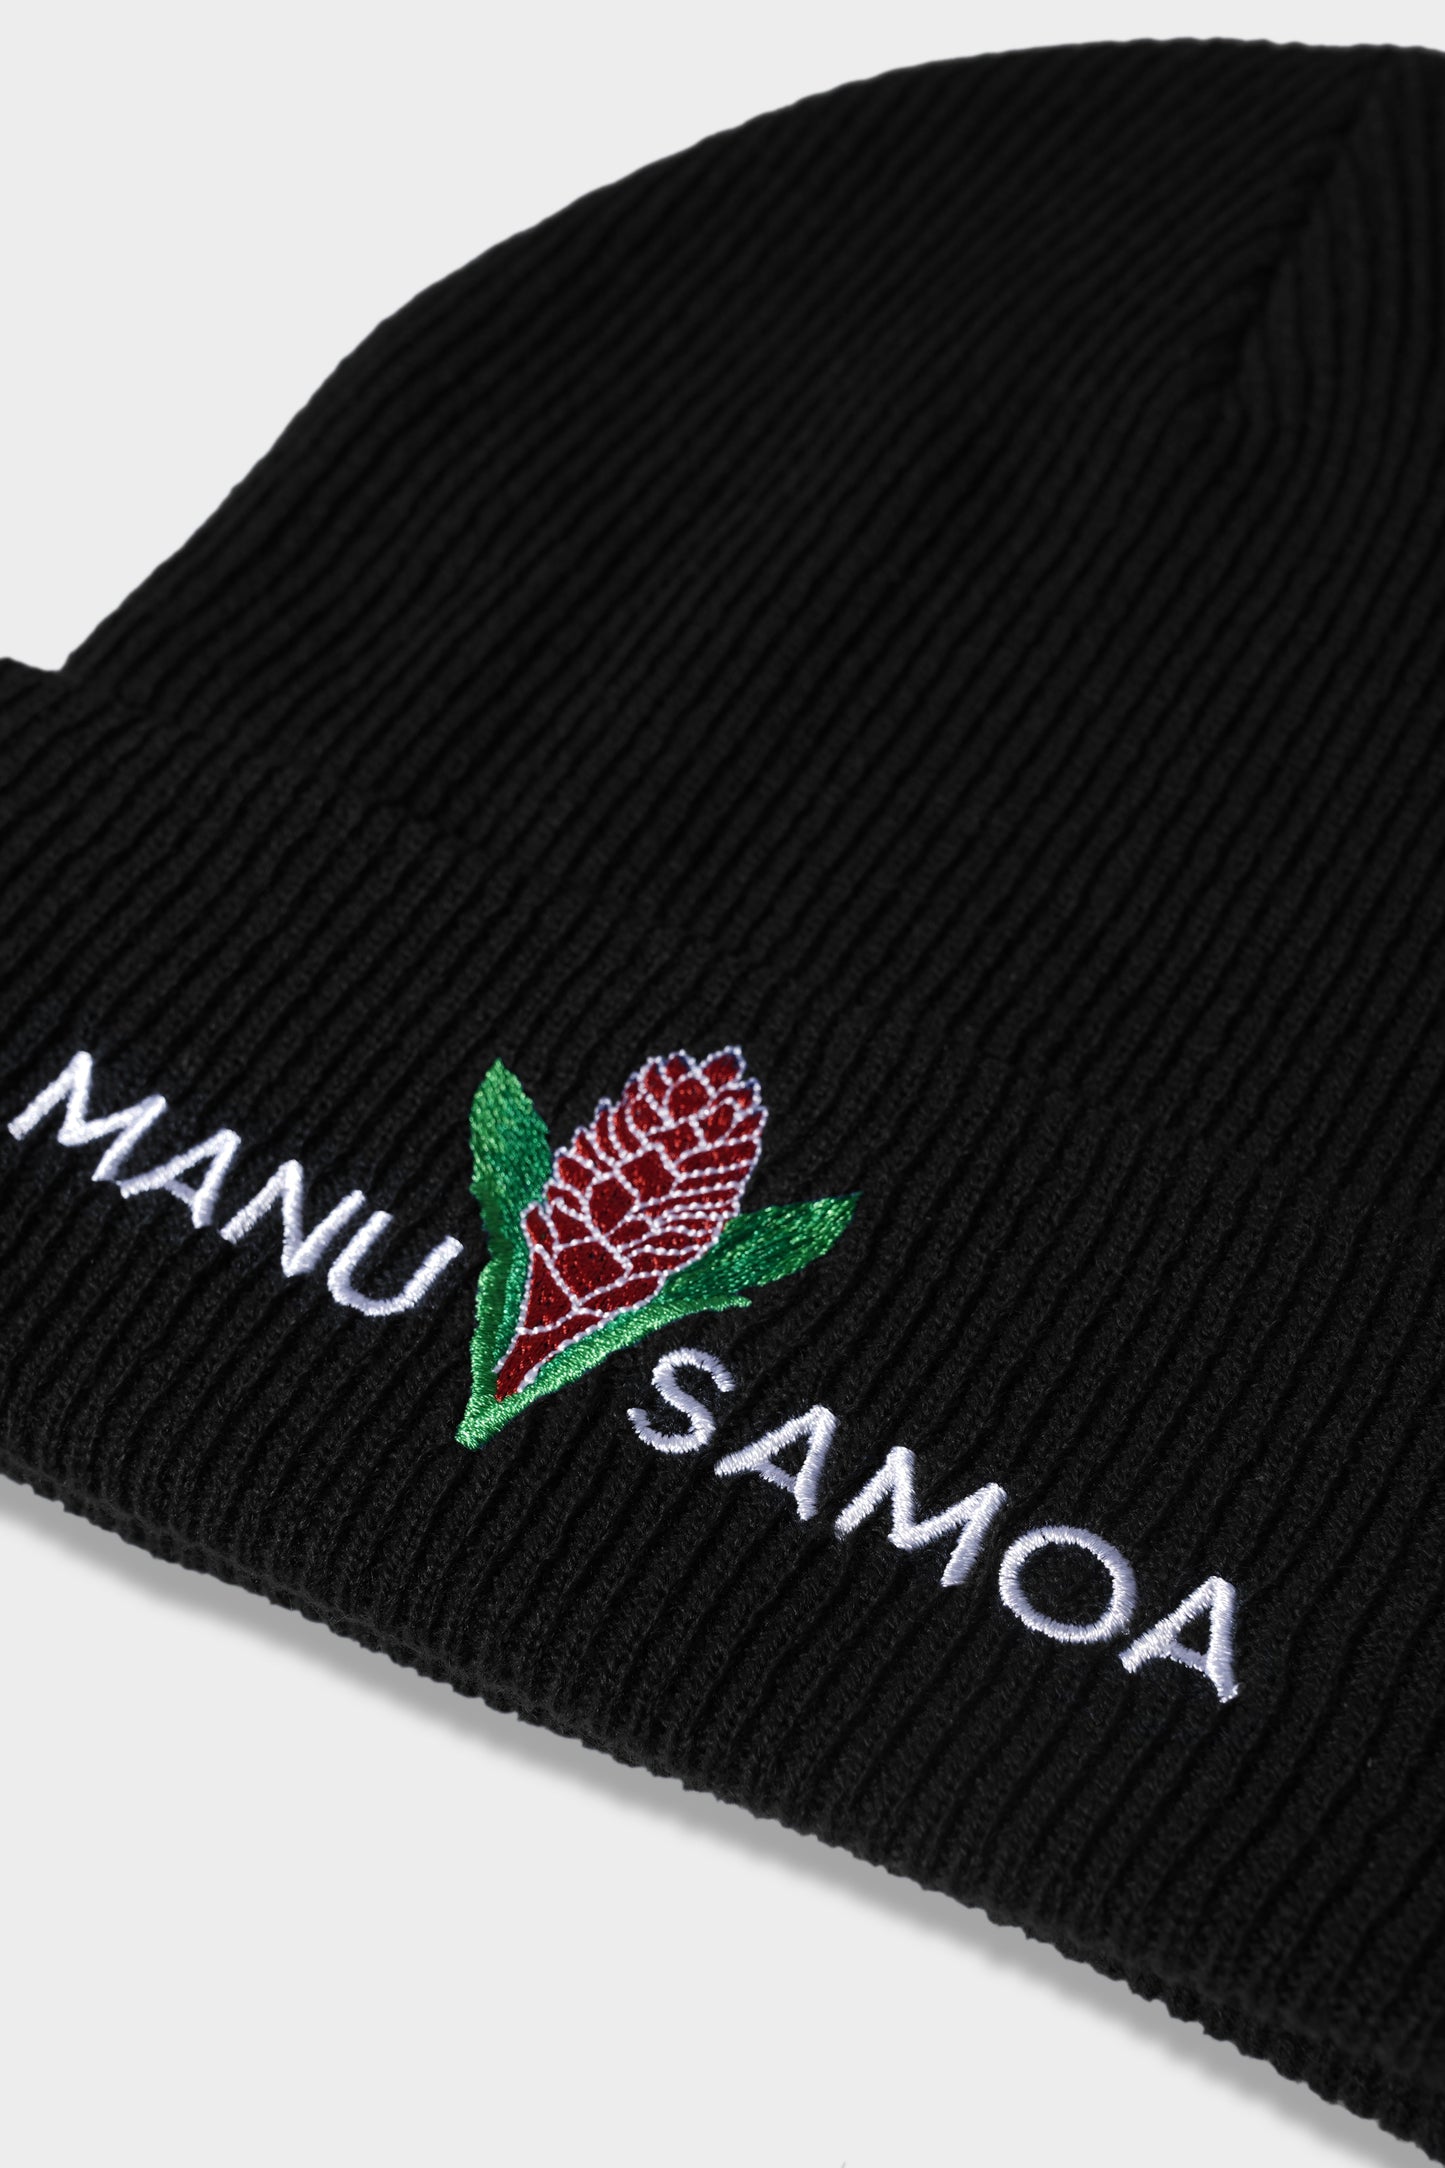 Manu Samoa Core Beanie Black